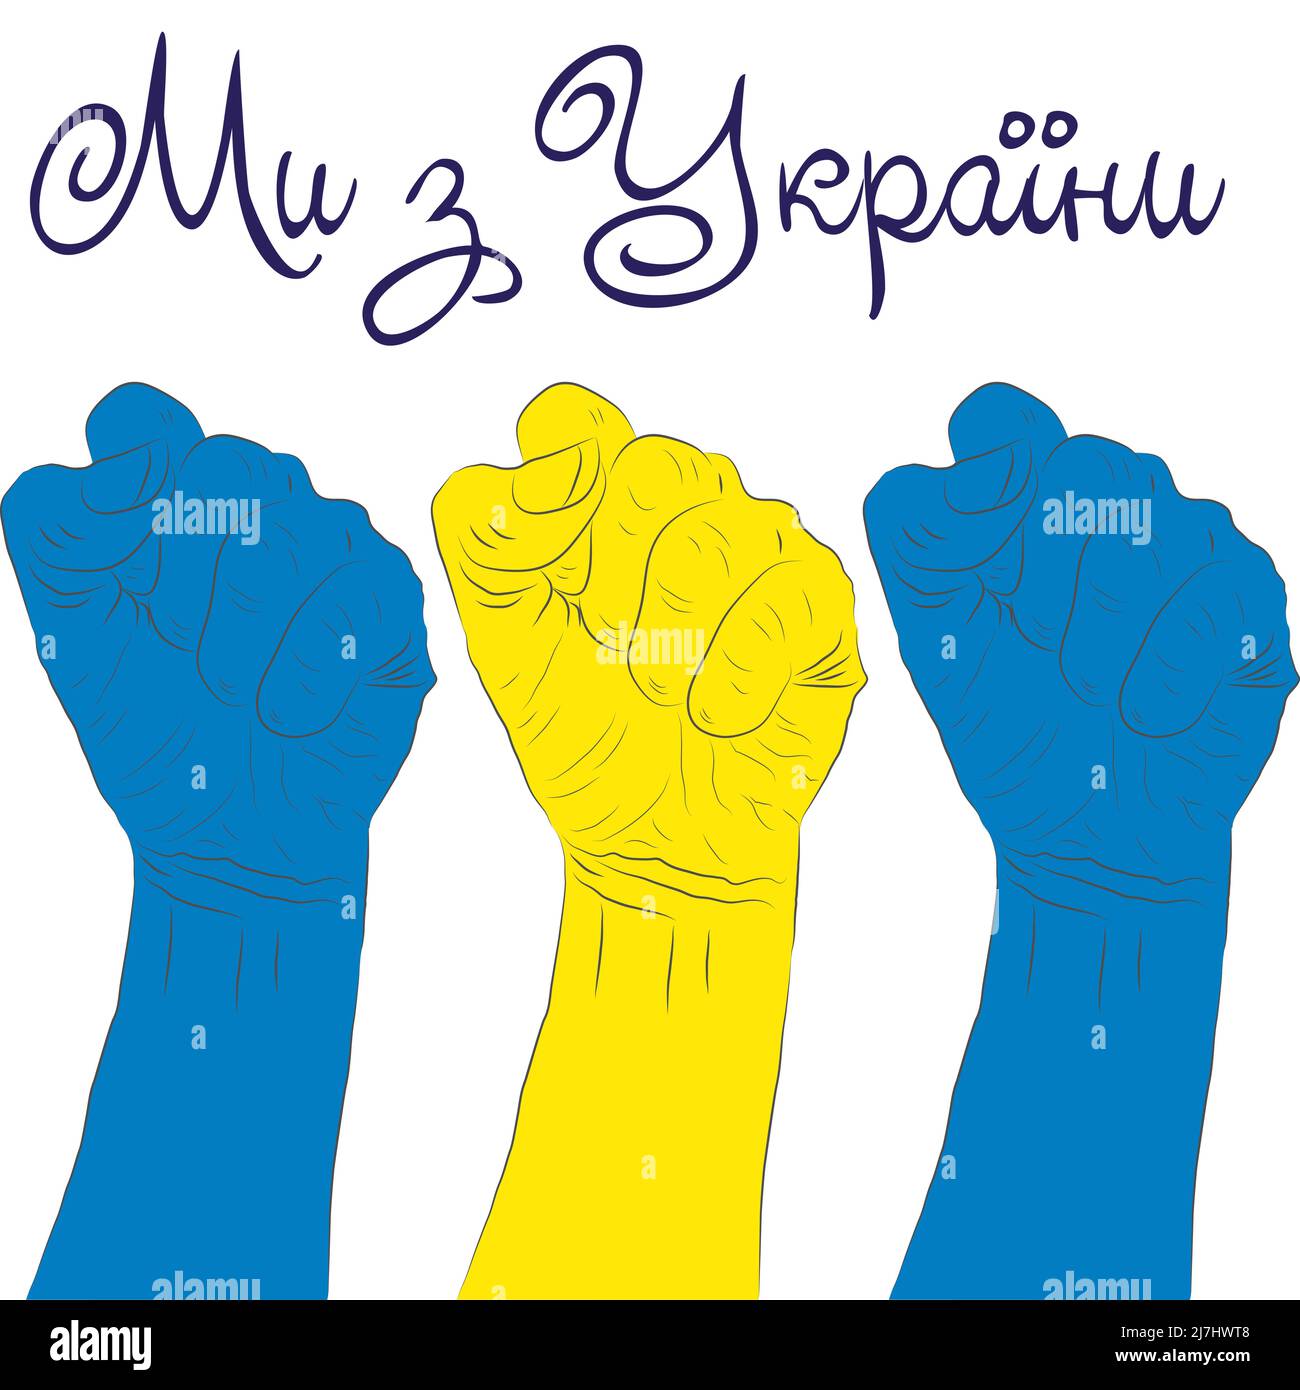 Help Ukraine. Hands Ukrainian national colors. Anti-war creative concept lettering in Ukrainian. Glory to the heroes, no war, pray for Ukraine Stock Vector